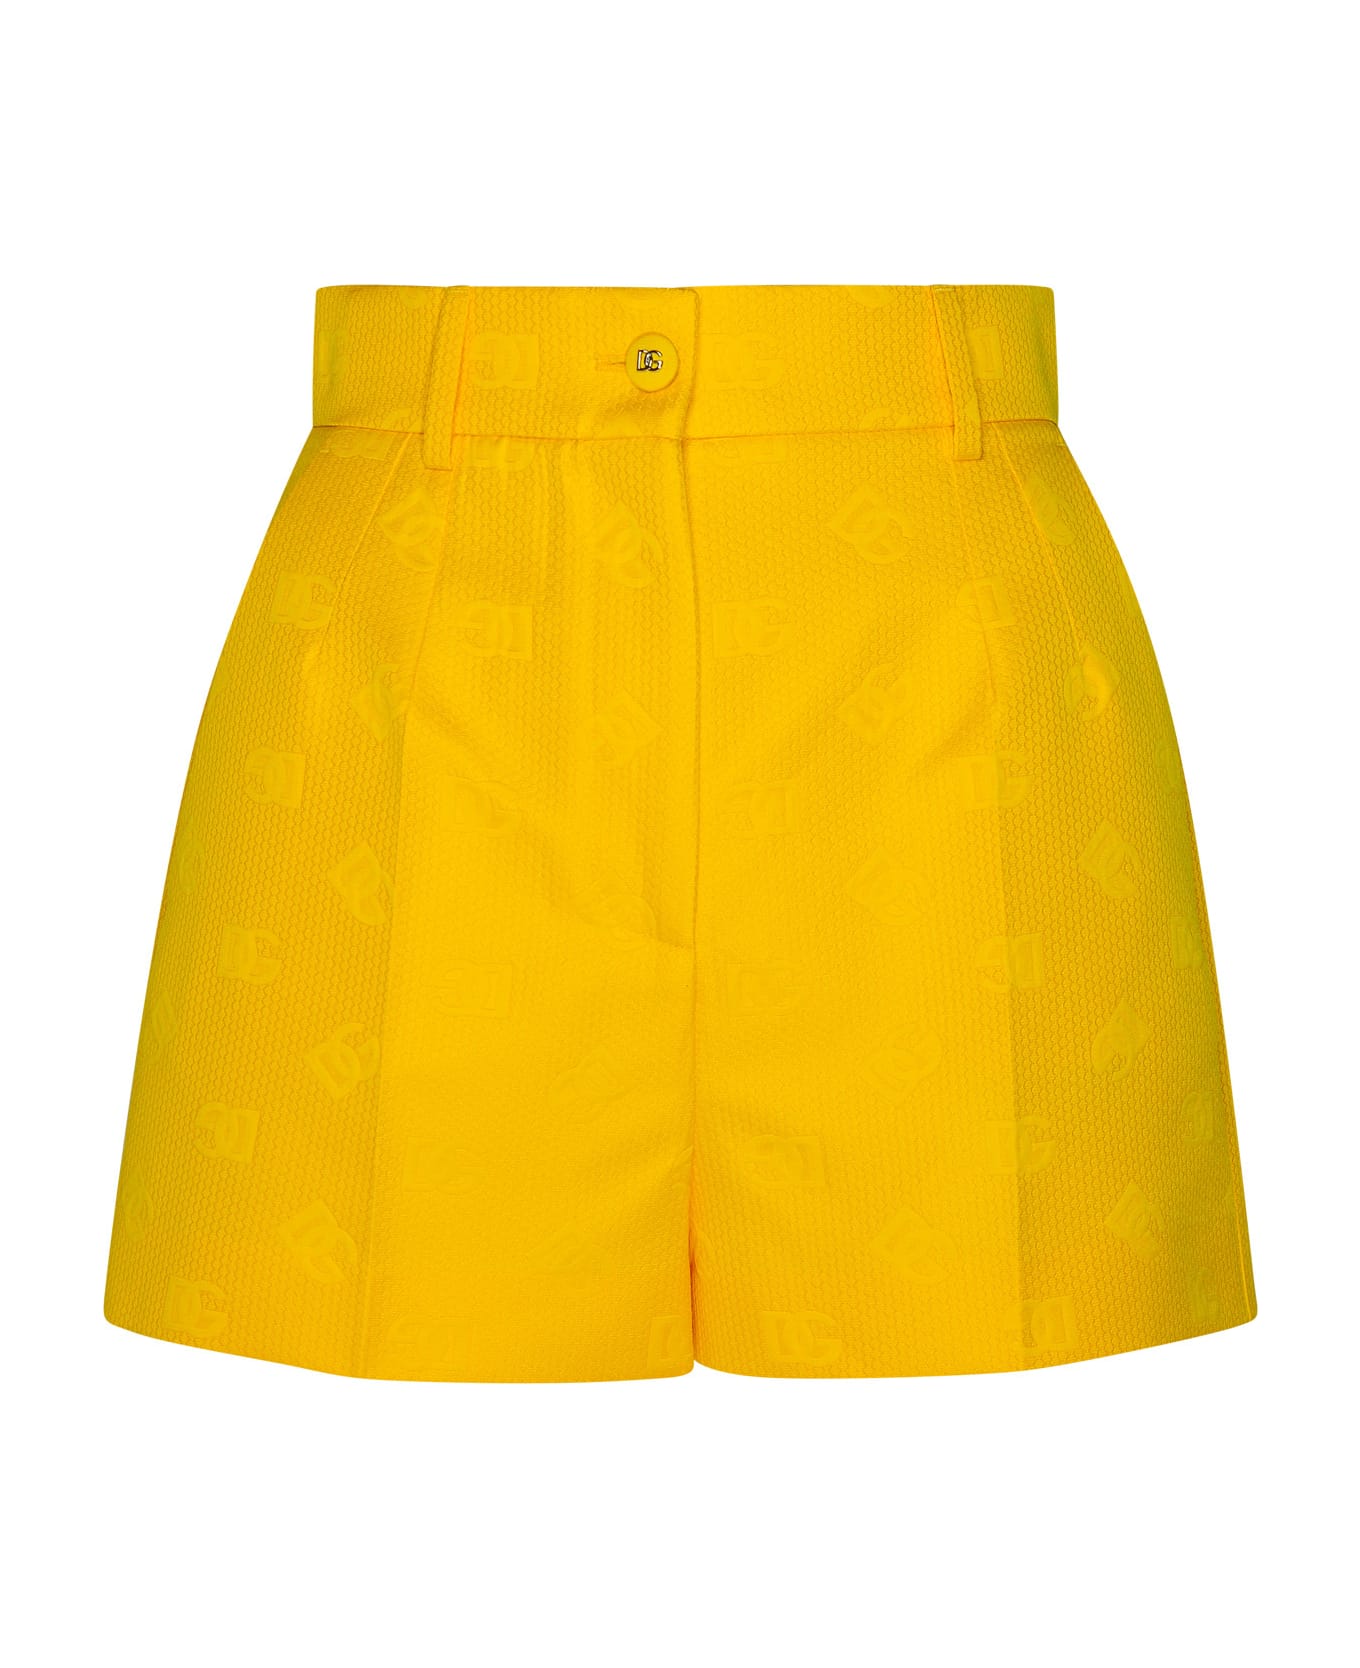 Dolce & Gabbana Cotton Shorts - Yellow